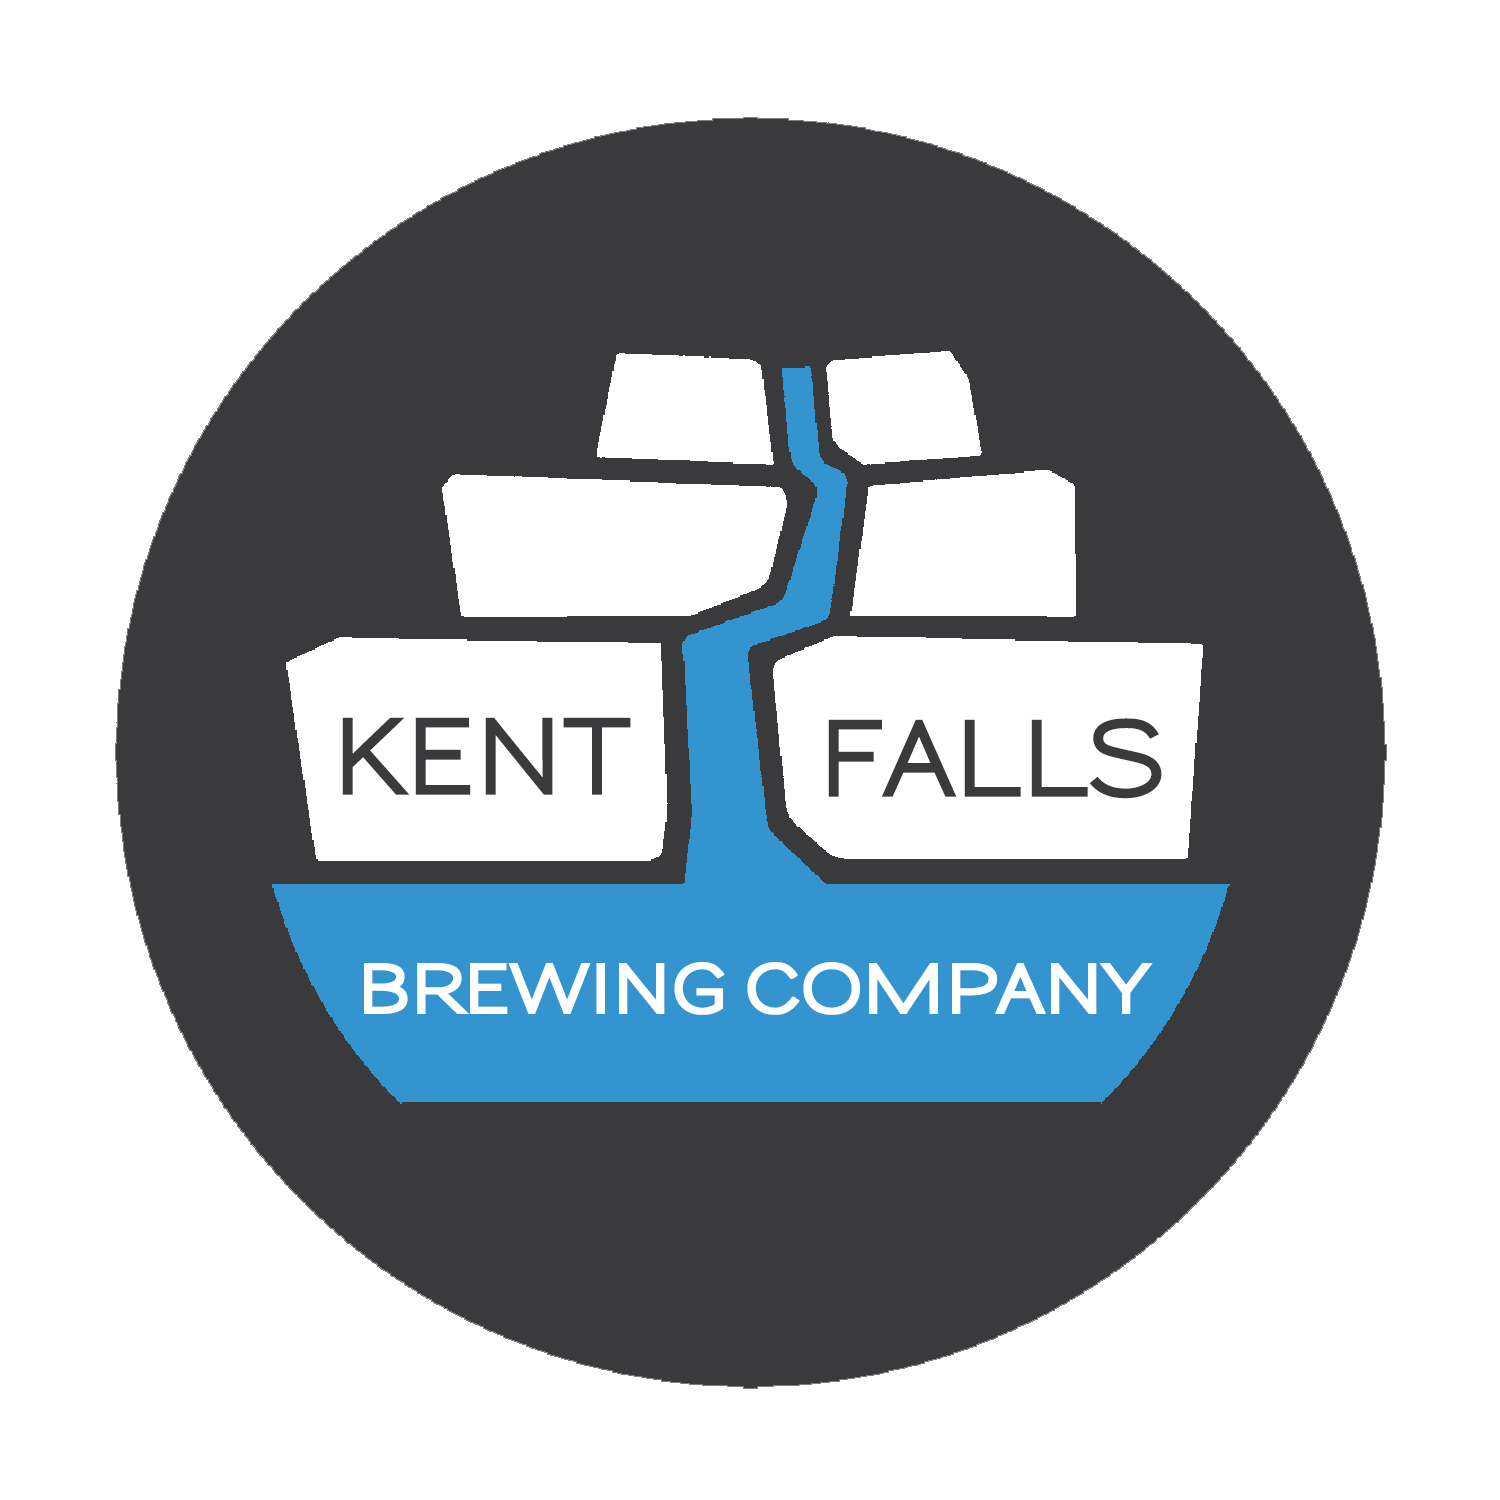 Kent Falls Brewing Company - logo.png